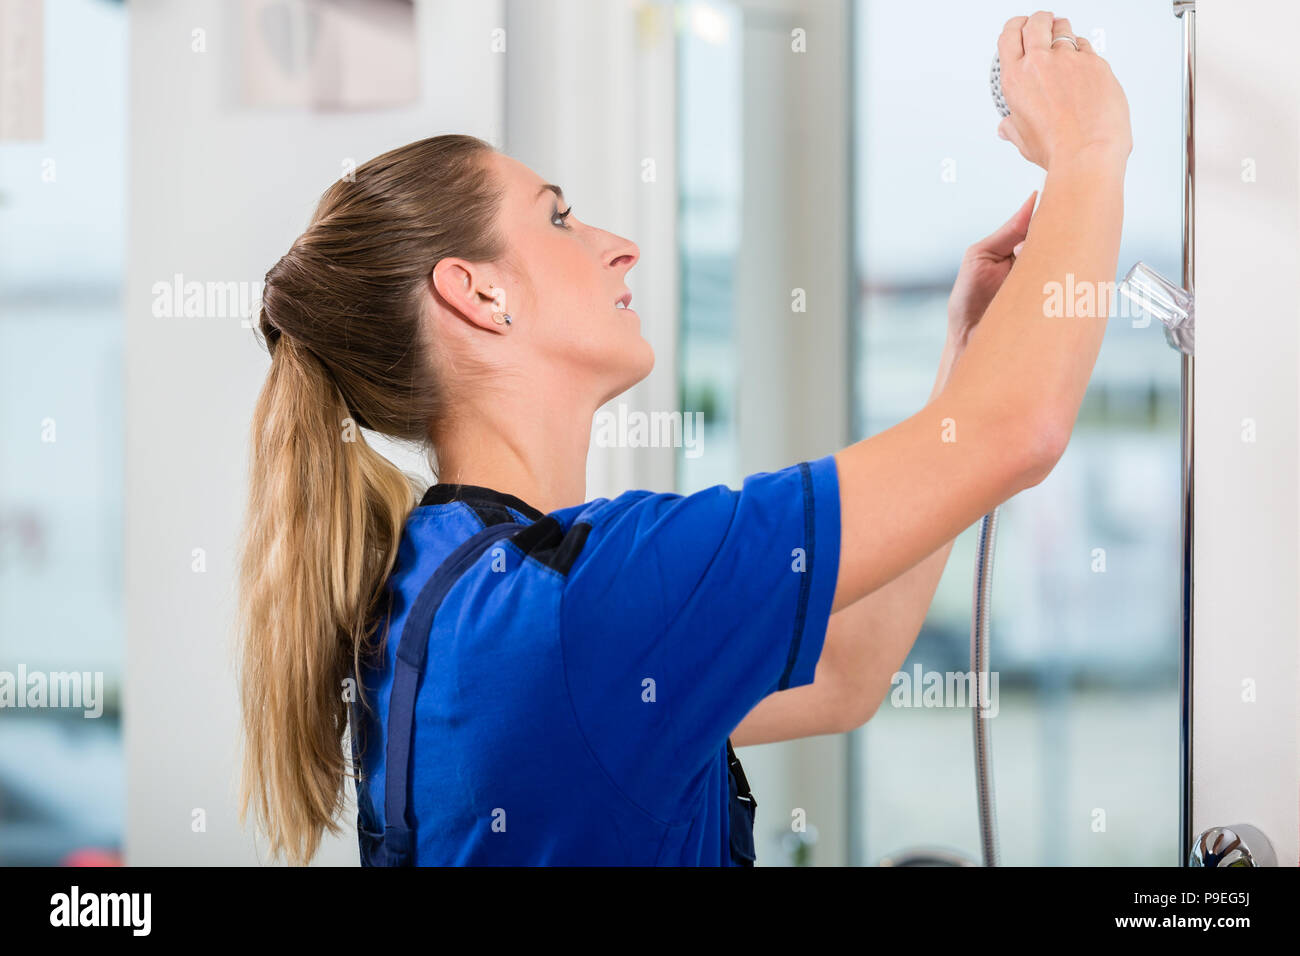 Qualifizierte Arbeitnehmerinnen Kontrolle einen Duschkopf in einem modernen Sanitär Shop Stockfoto